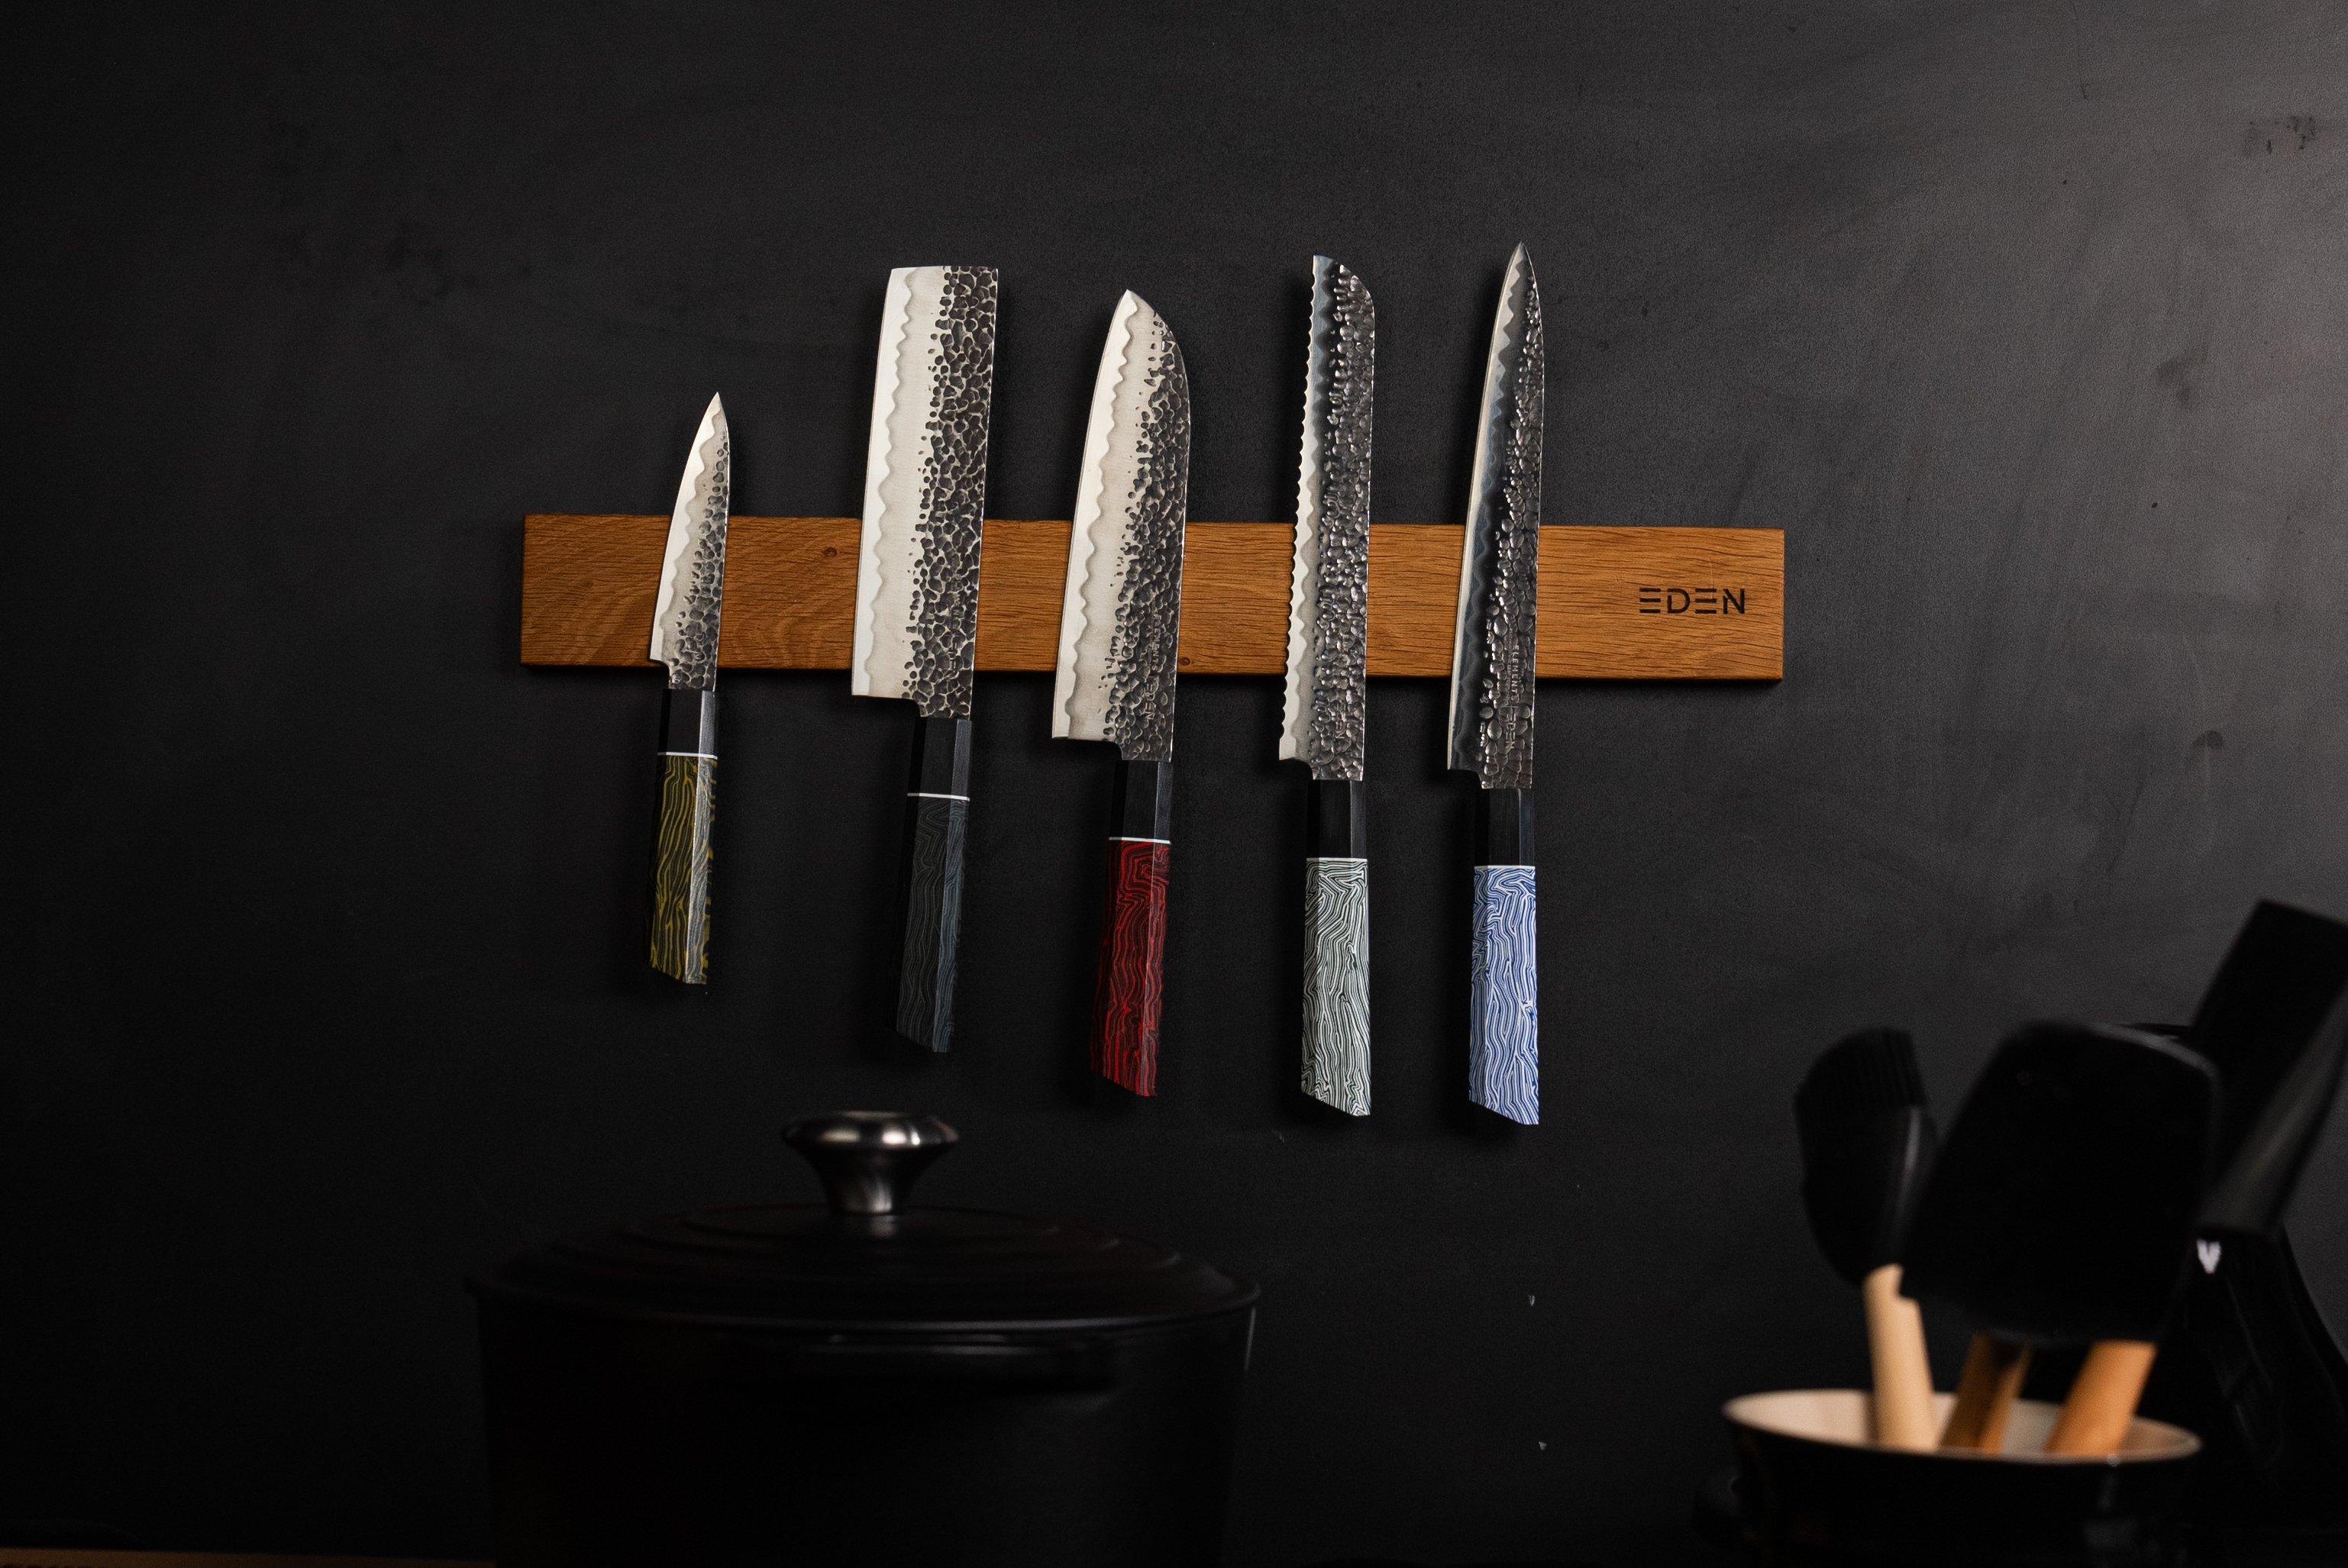 Couteau à éplucher Kitchen Elements de Henckels International de 3 po 